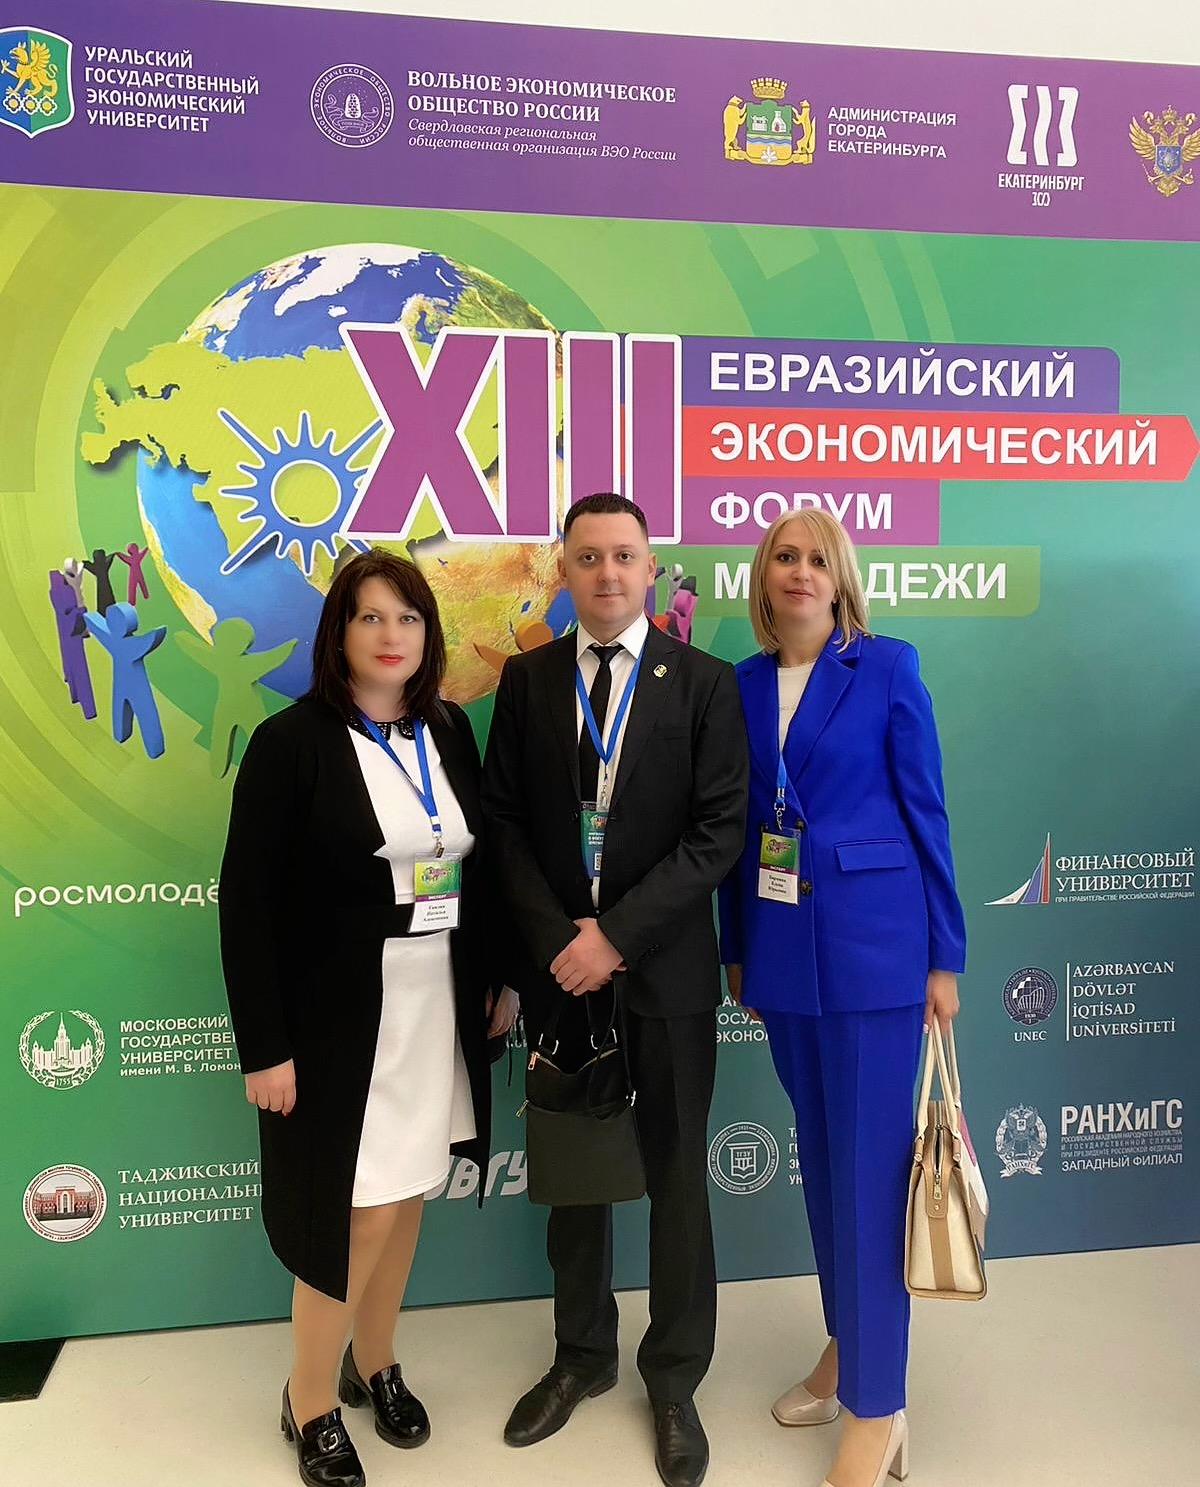 XIII Евразийский экономический форум молодежи: наше участие